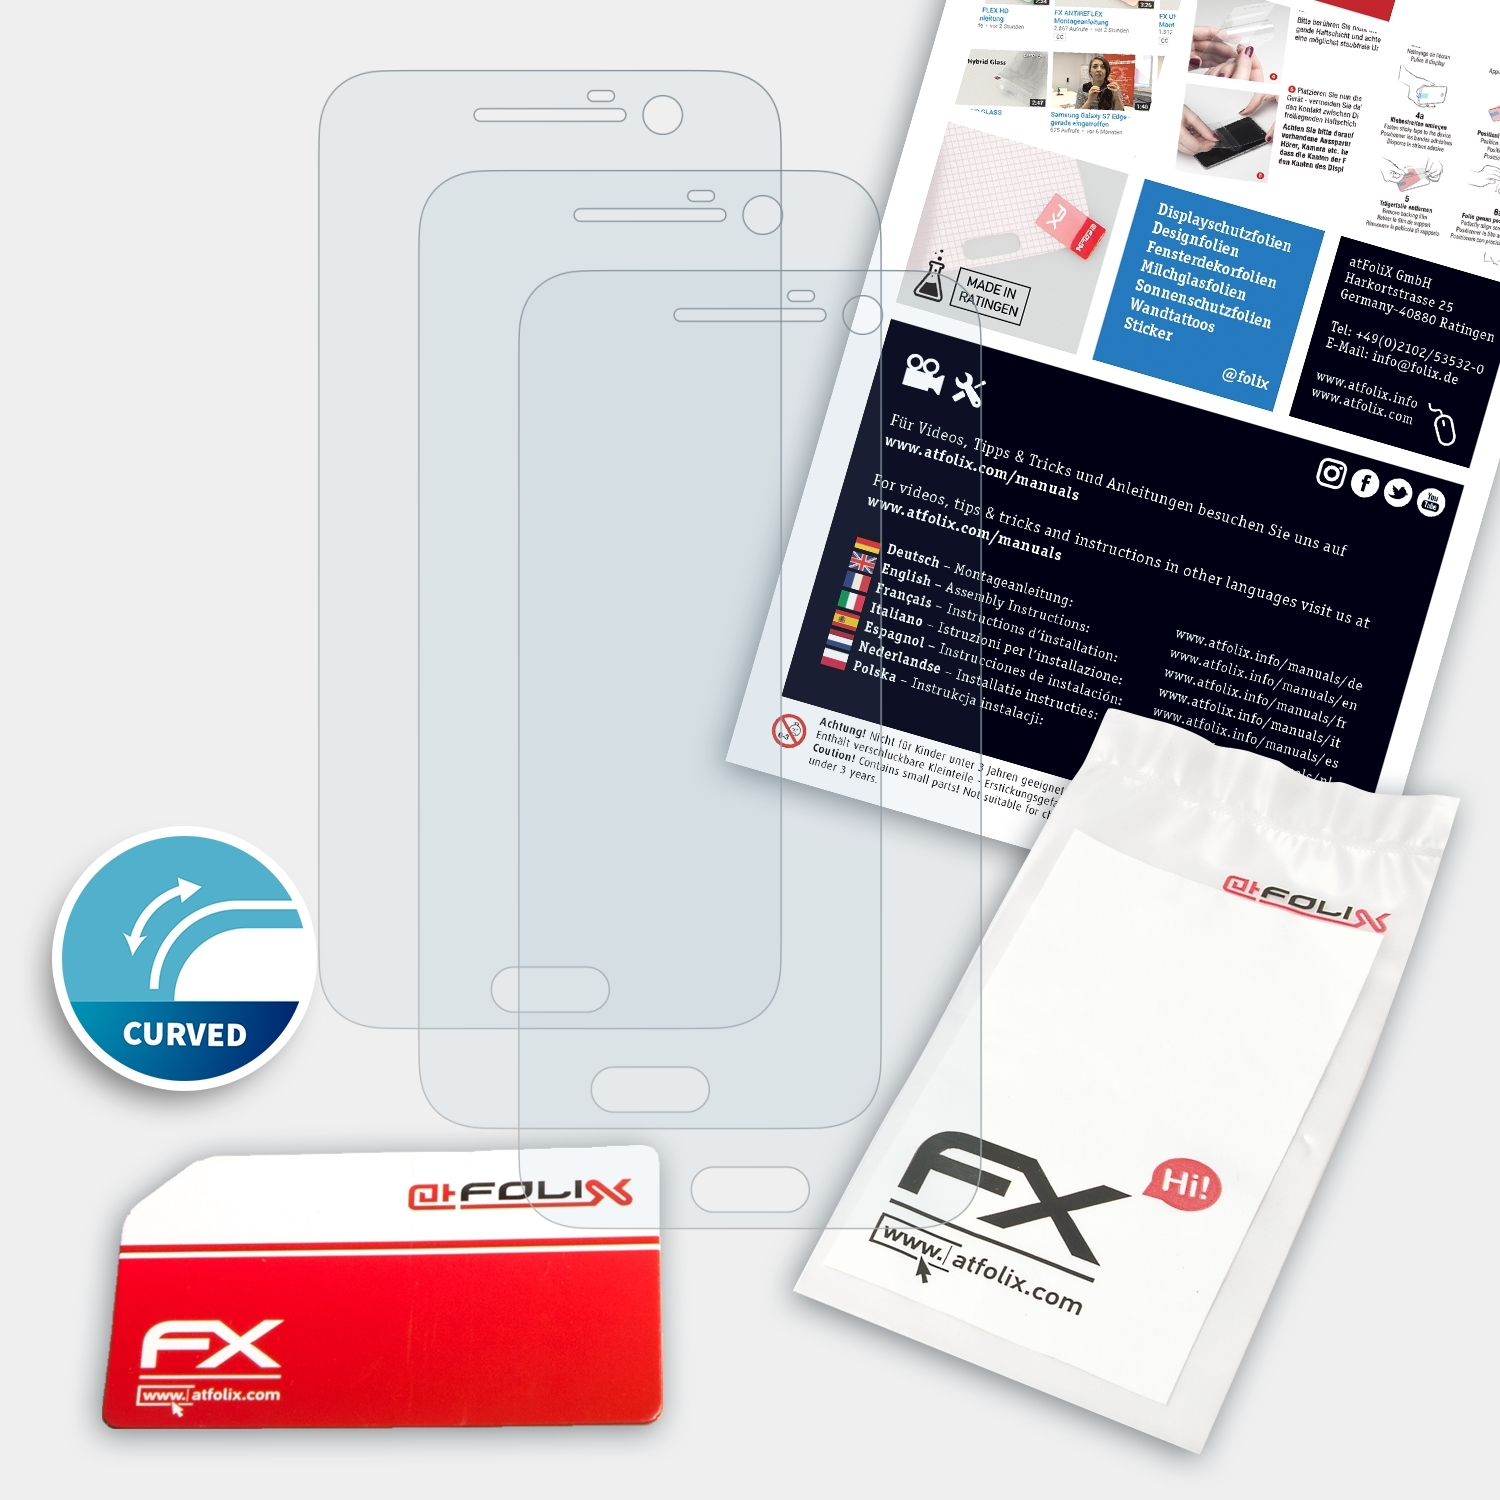 ATFOLIX 3x Displayschutz(für 10) FX-ActiFleX HTC